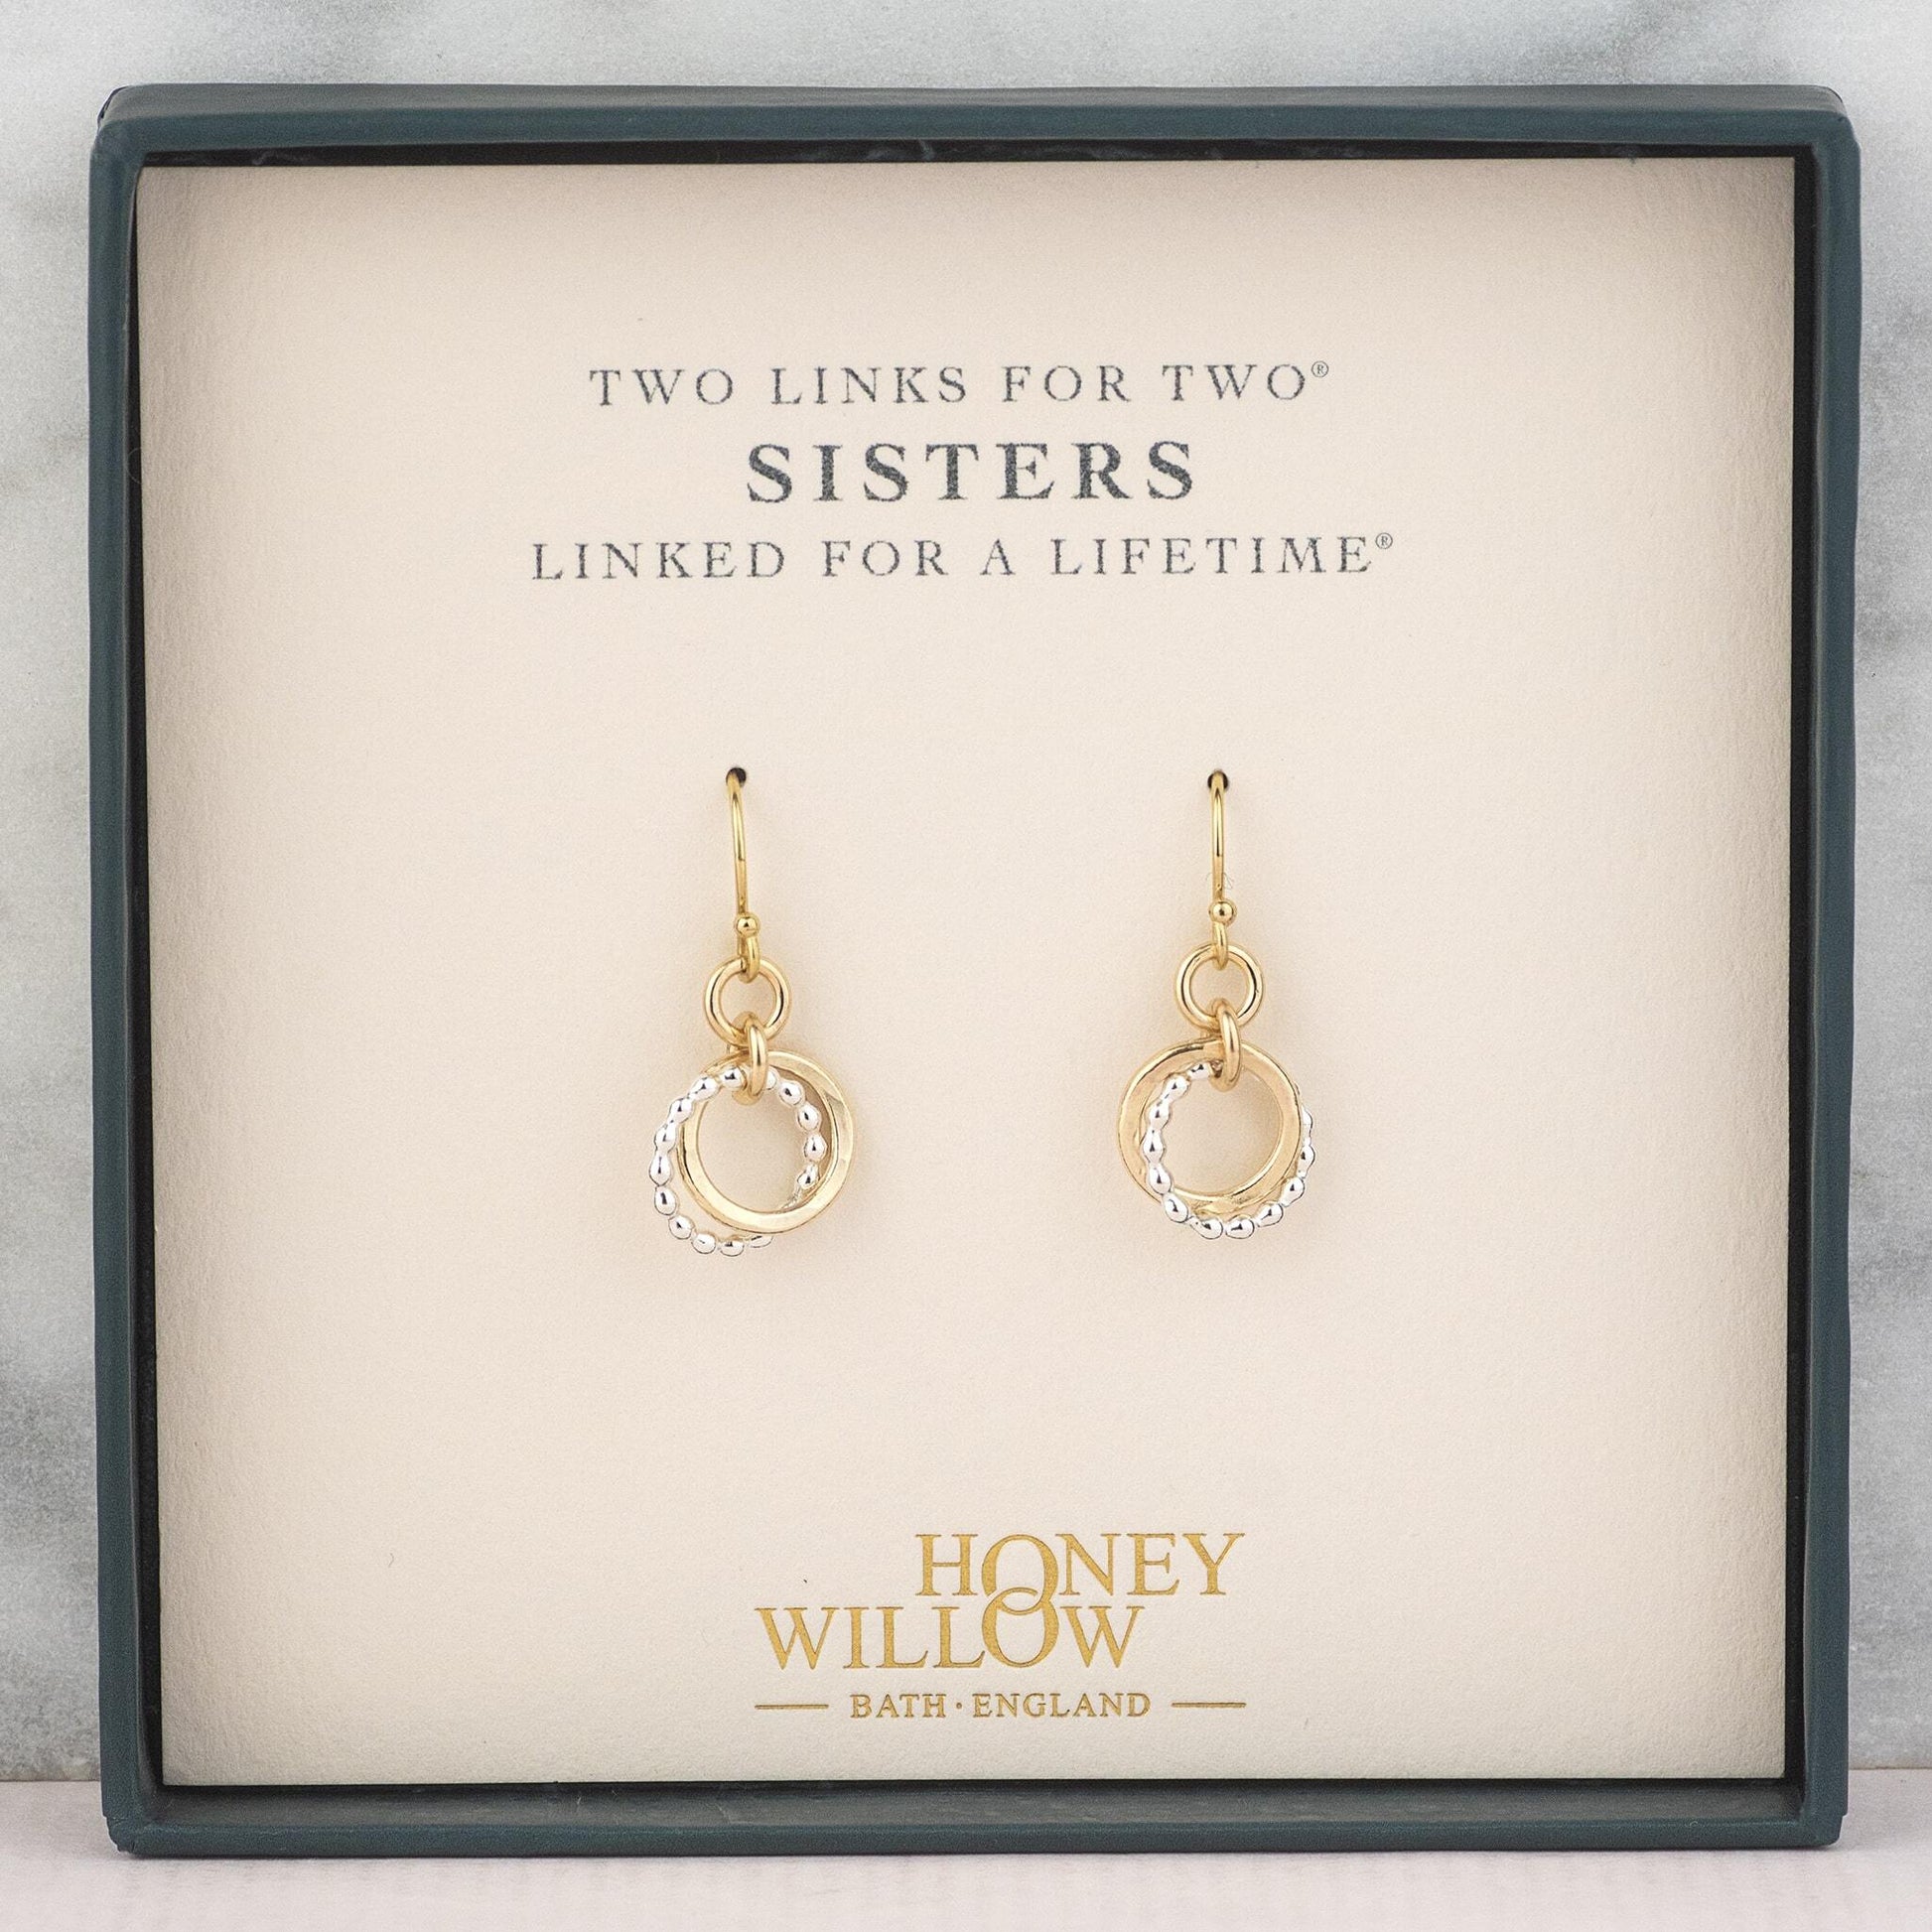 Gift for Sister - 2 Links for 2 Sisters - Love Knot Earrings